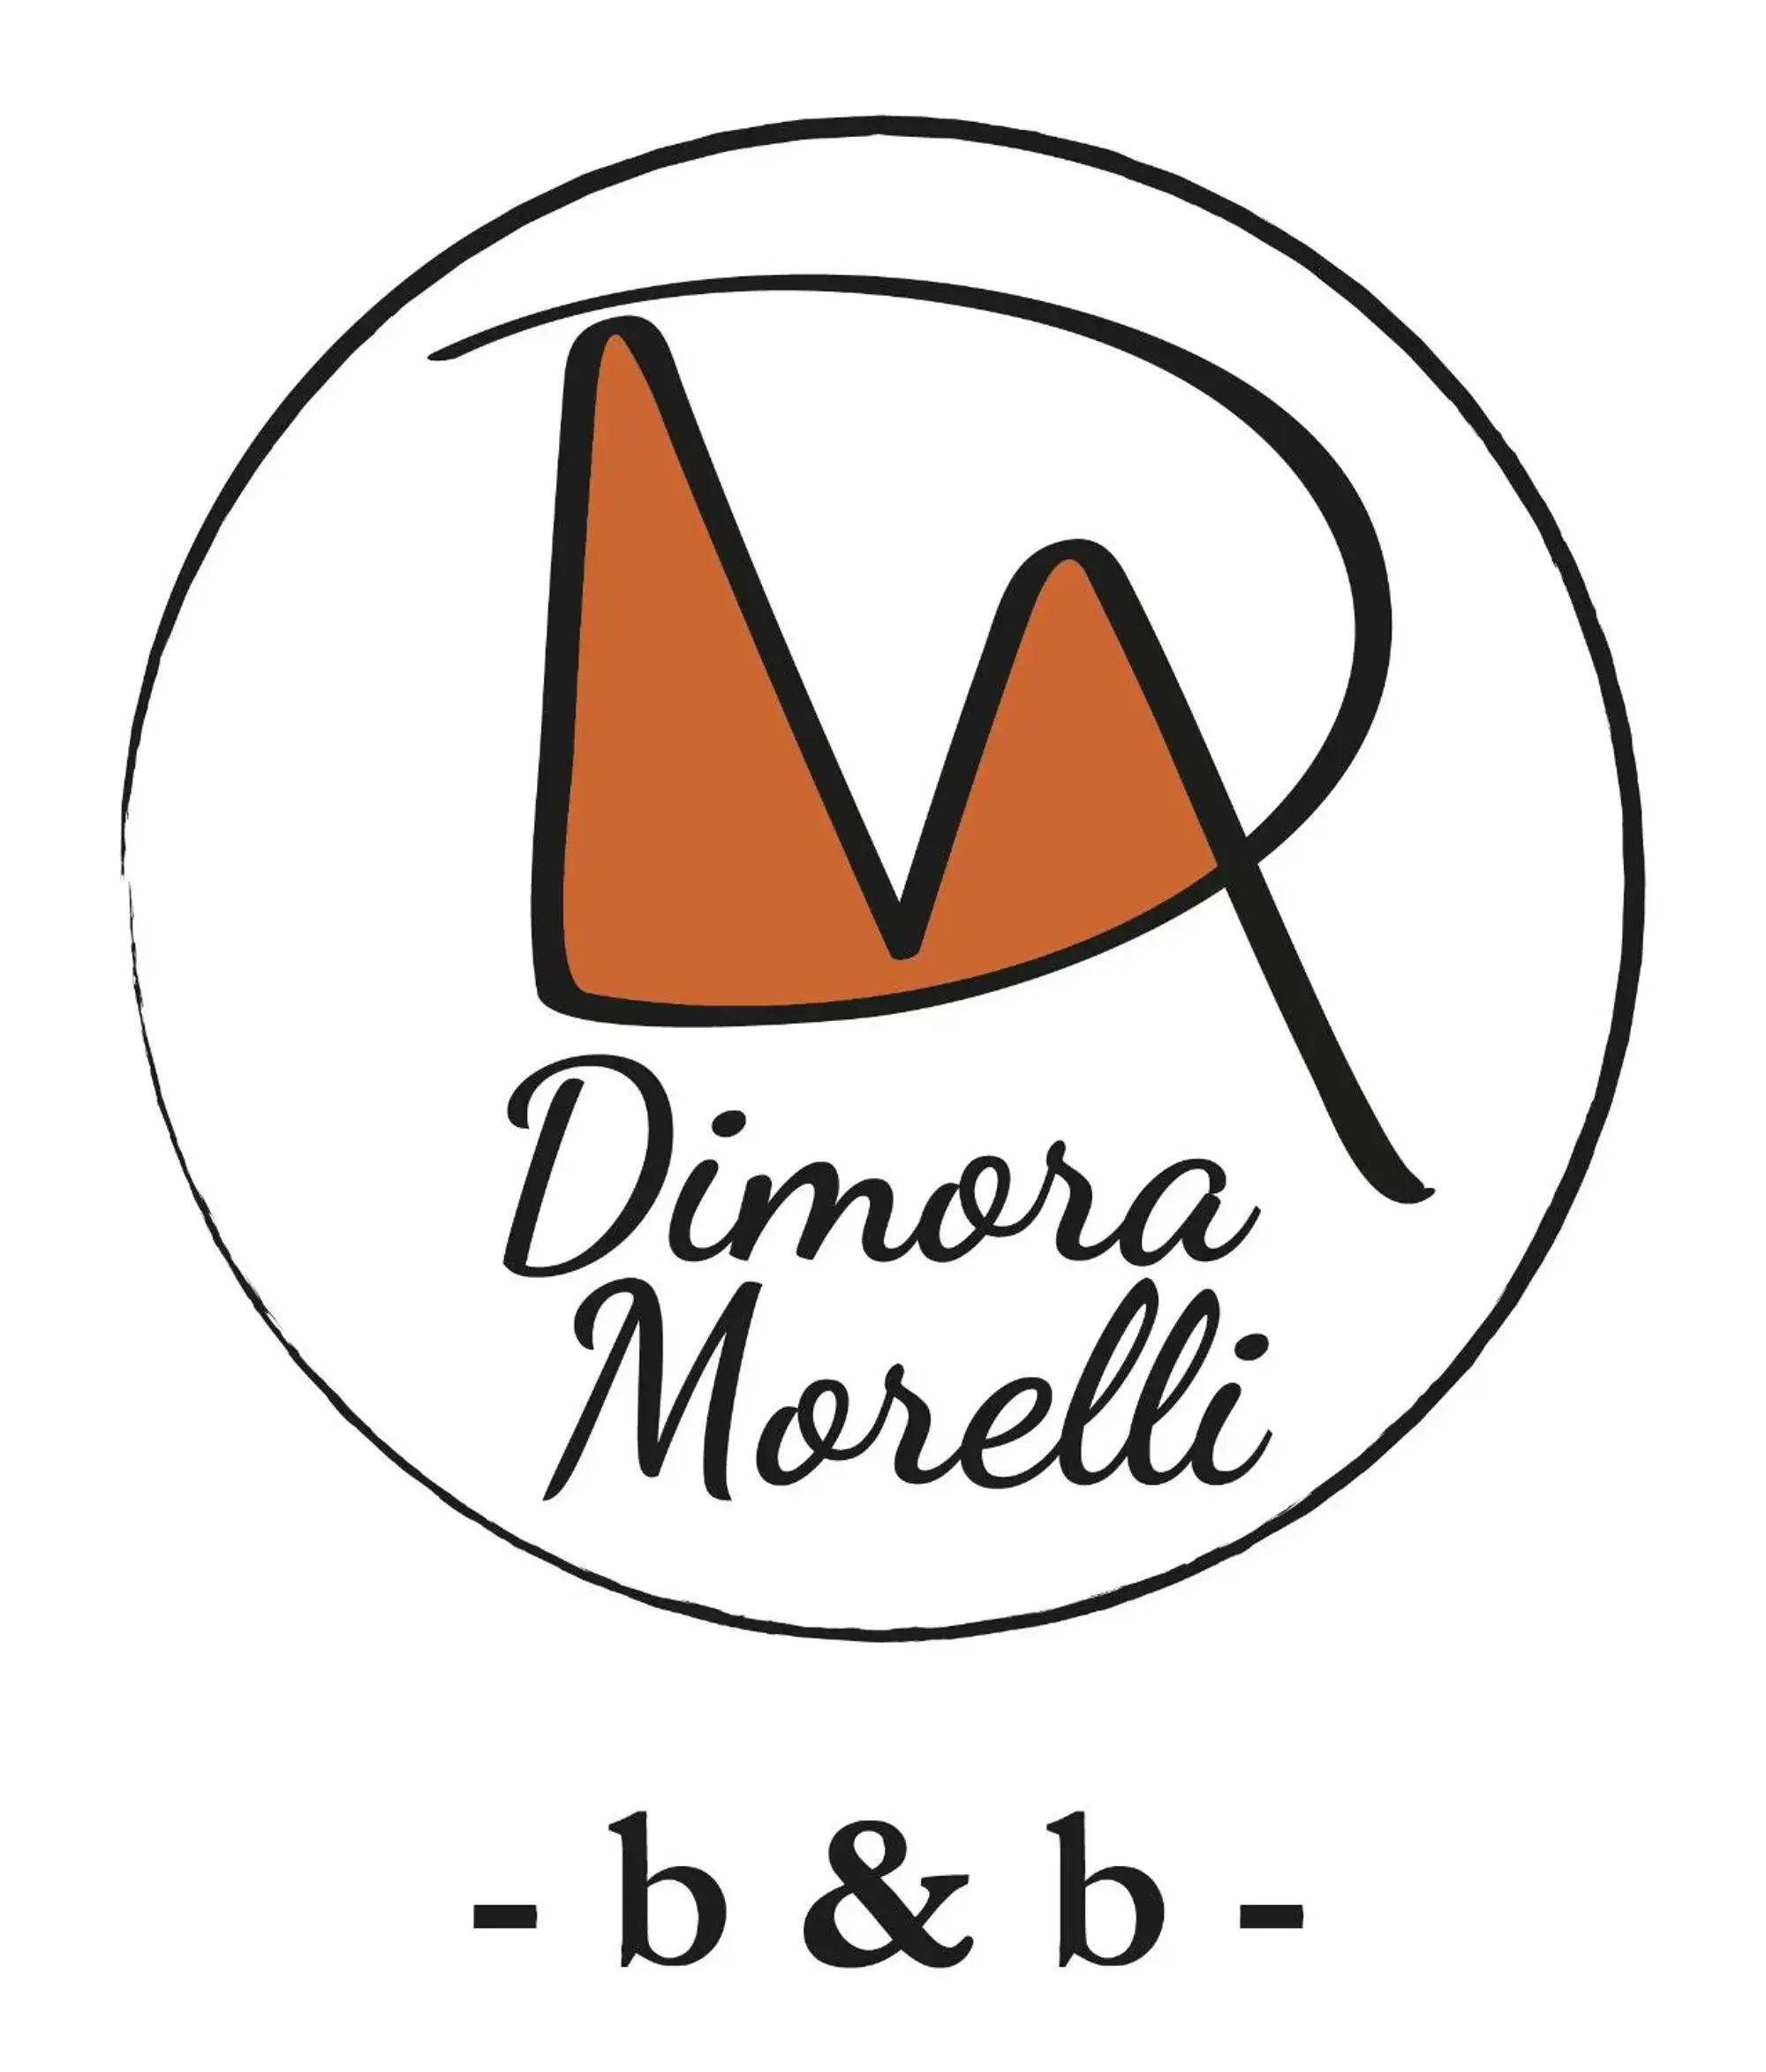 Staff in B&B Dimora Morelli